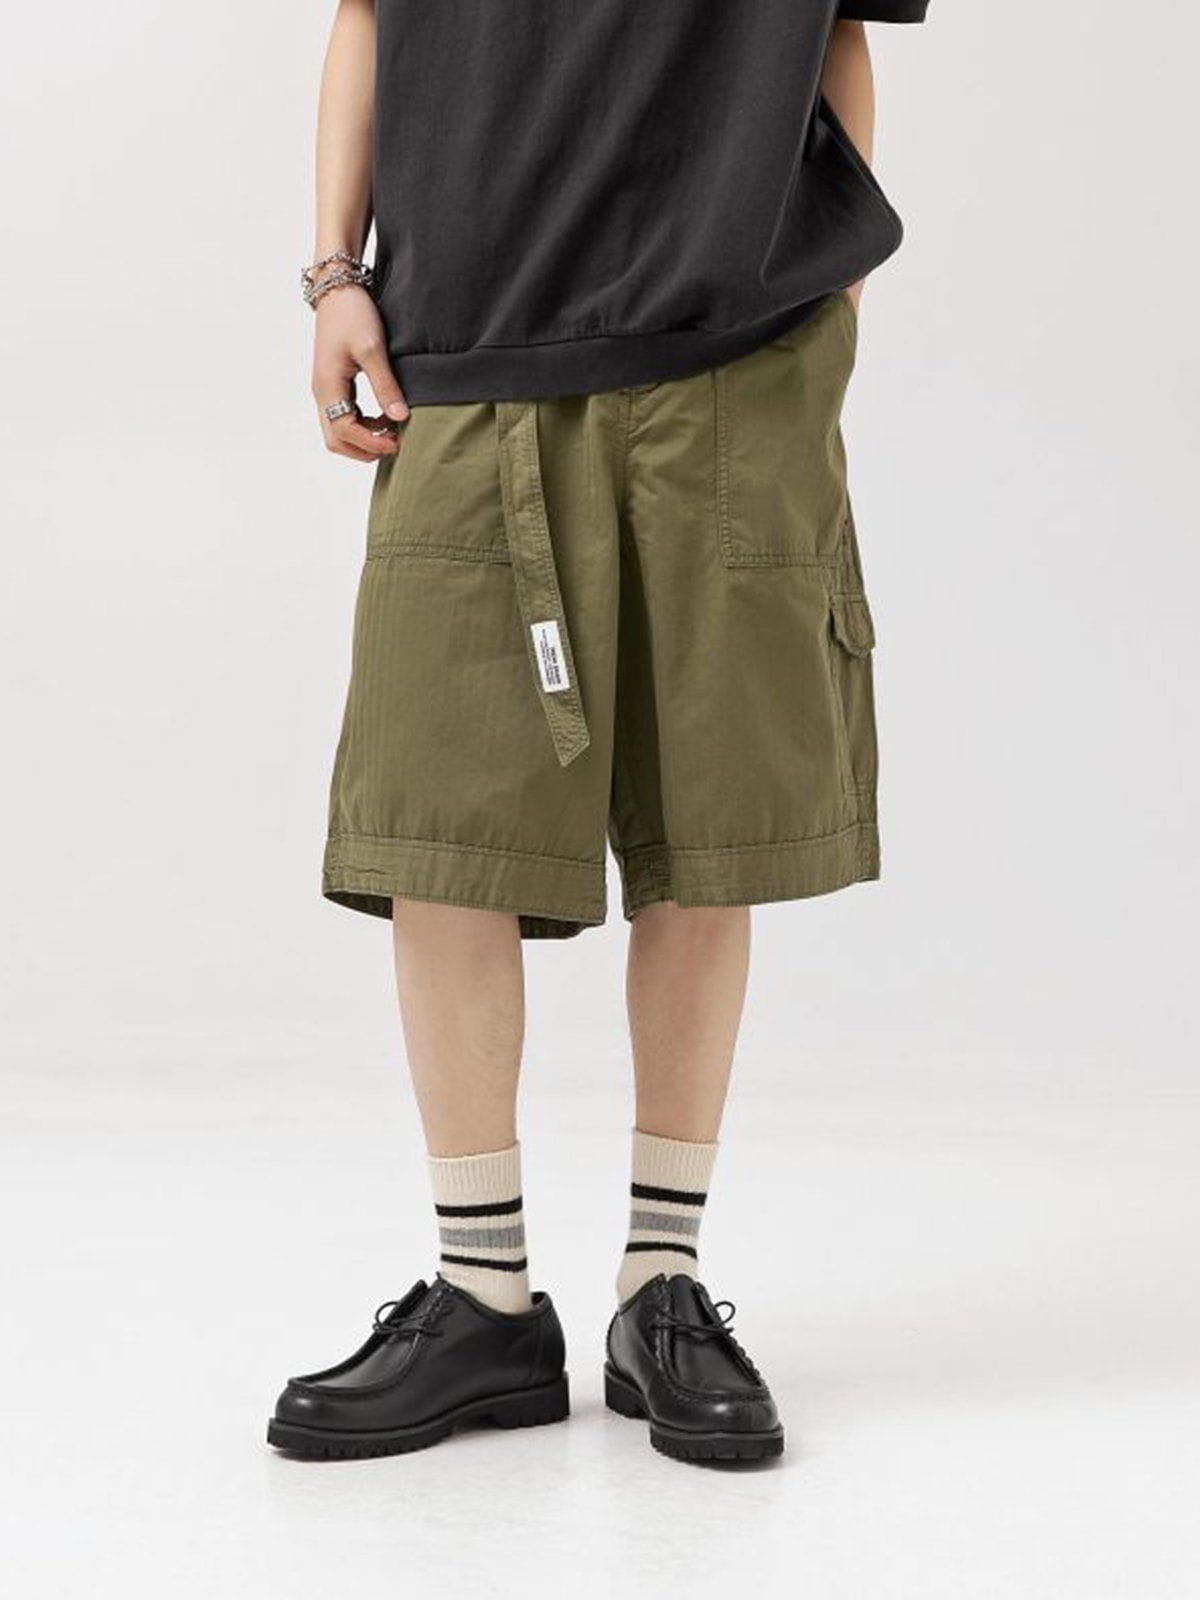 Majesda® - Large Pocket Cargo Shorts outfit ideas streetwear fashion